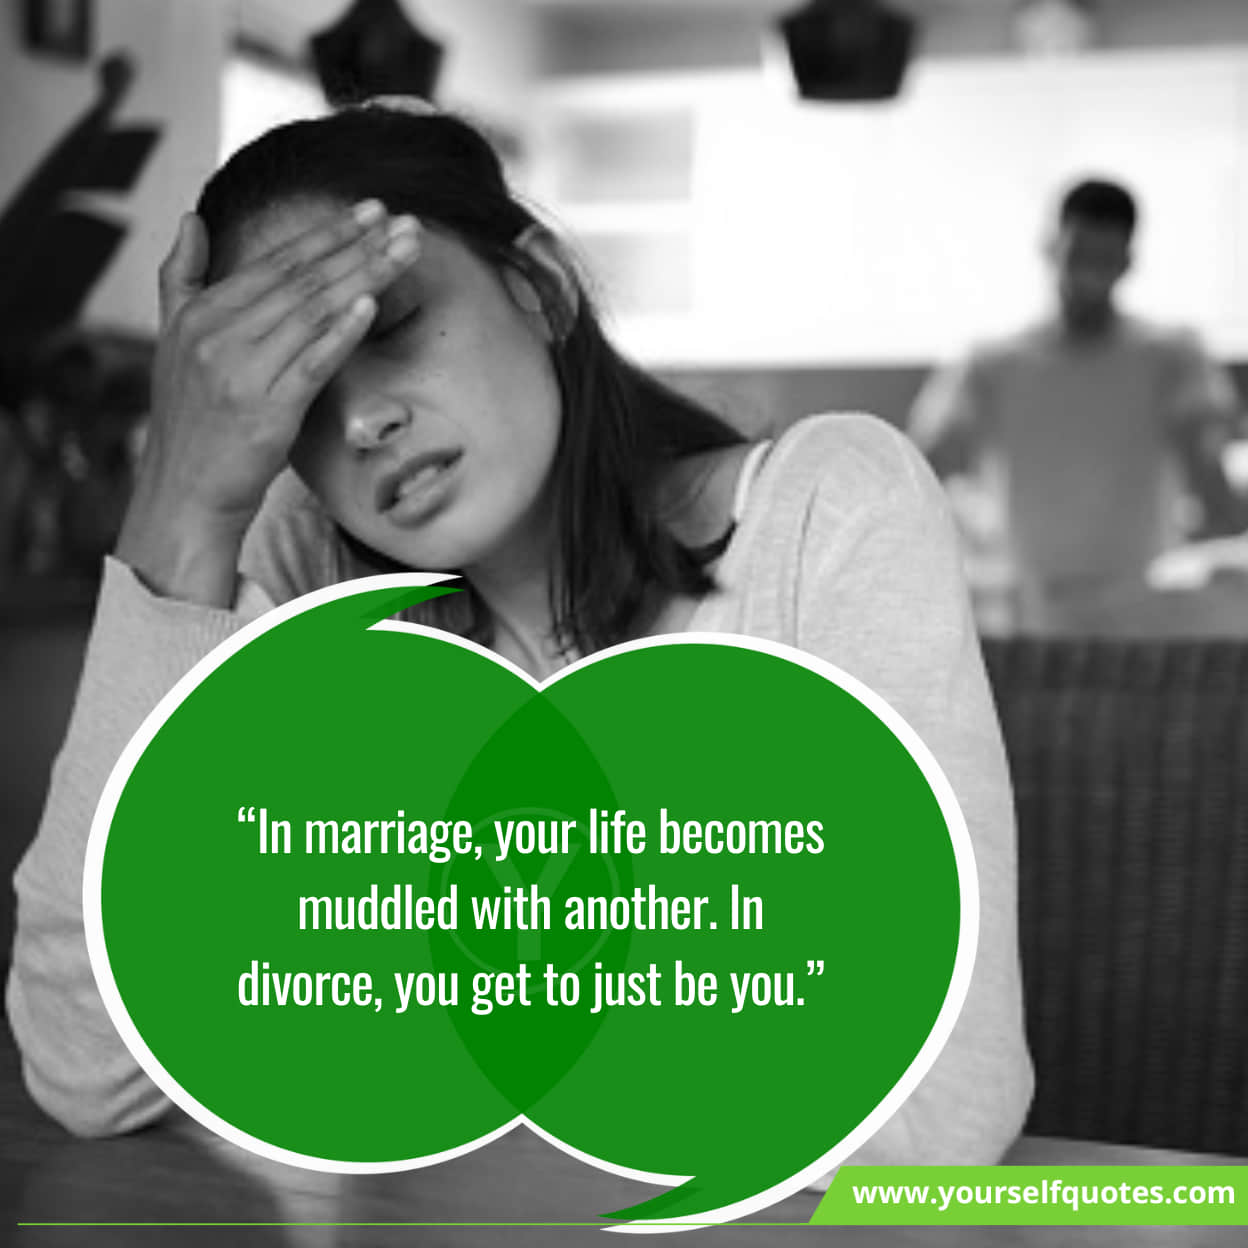 Motivational Memorable Quotes About Divorce